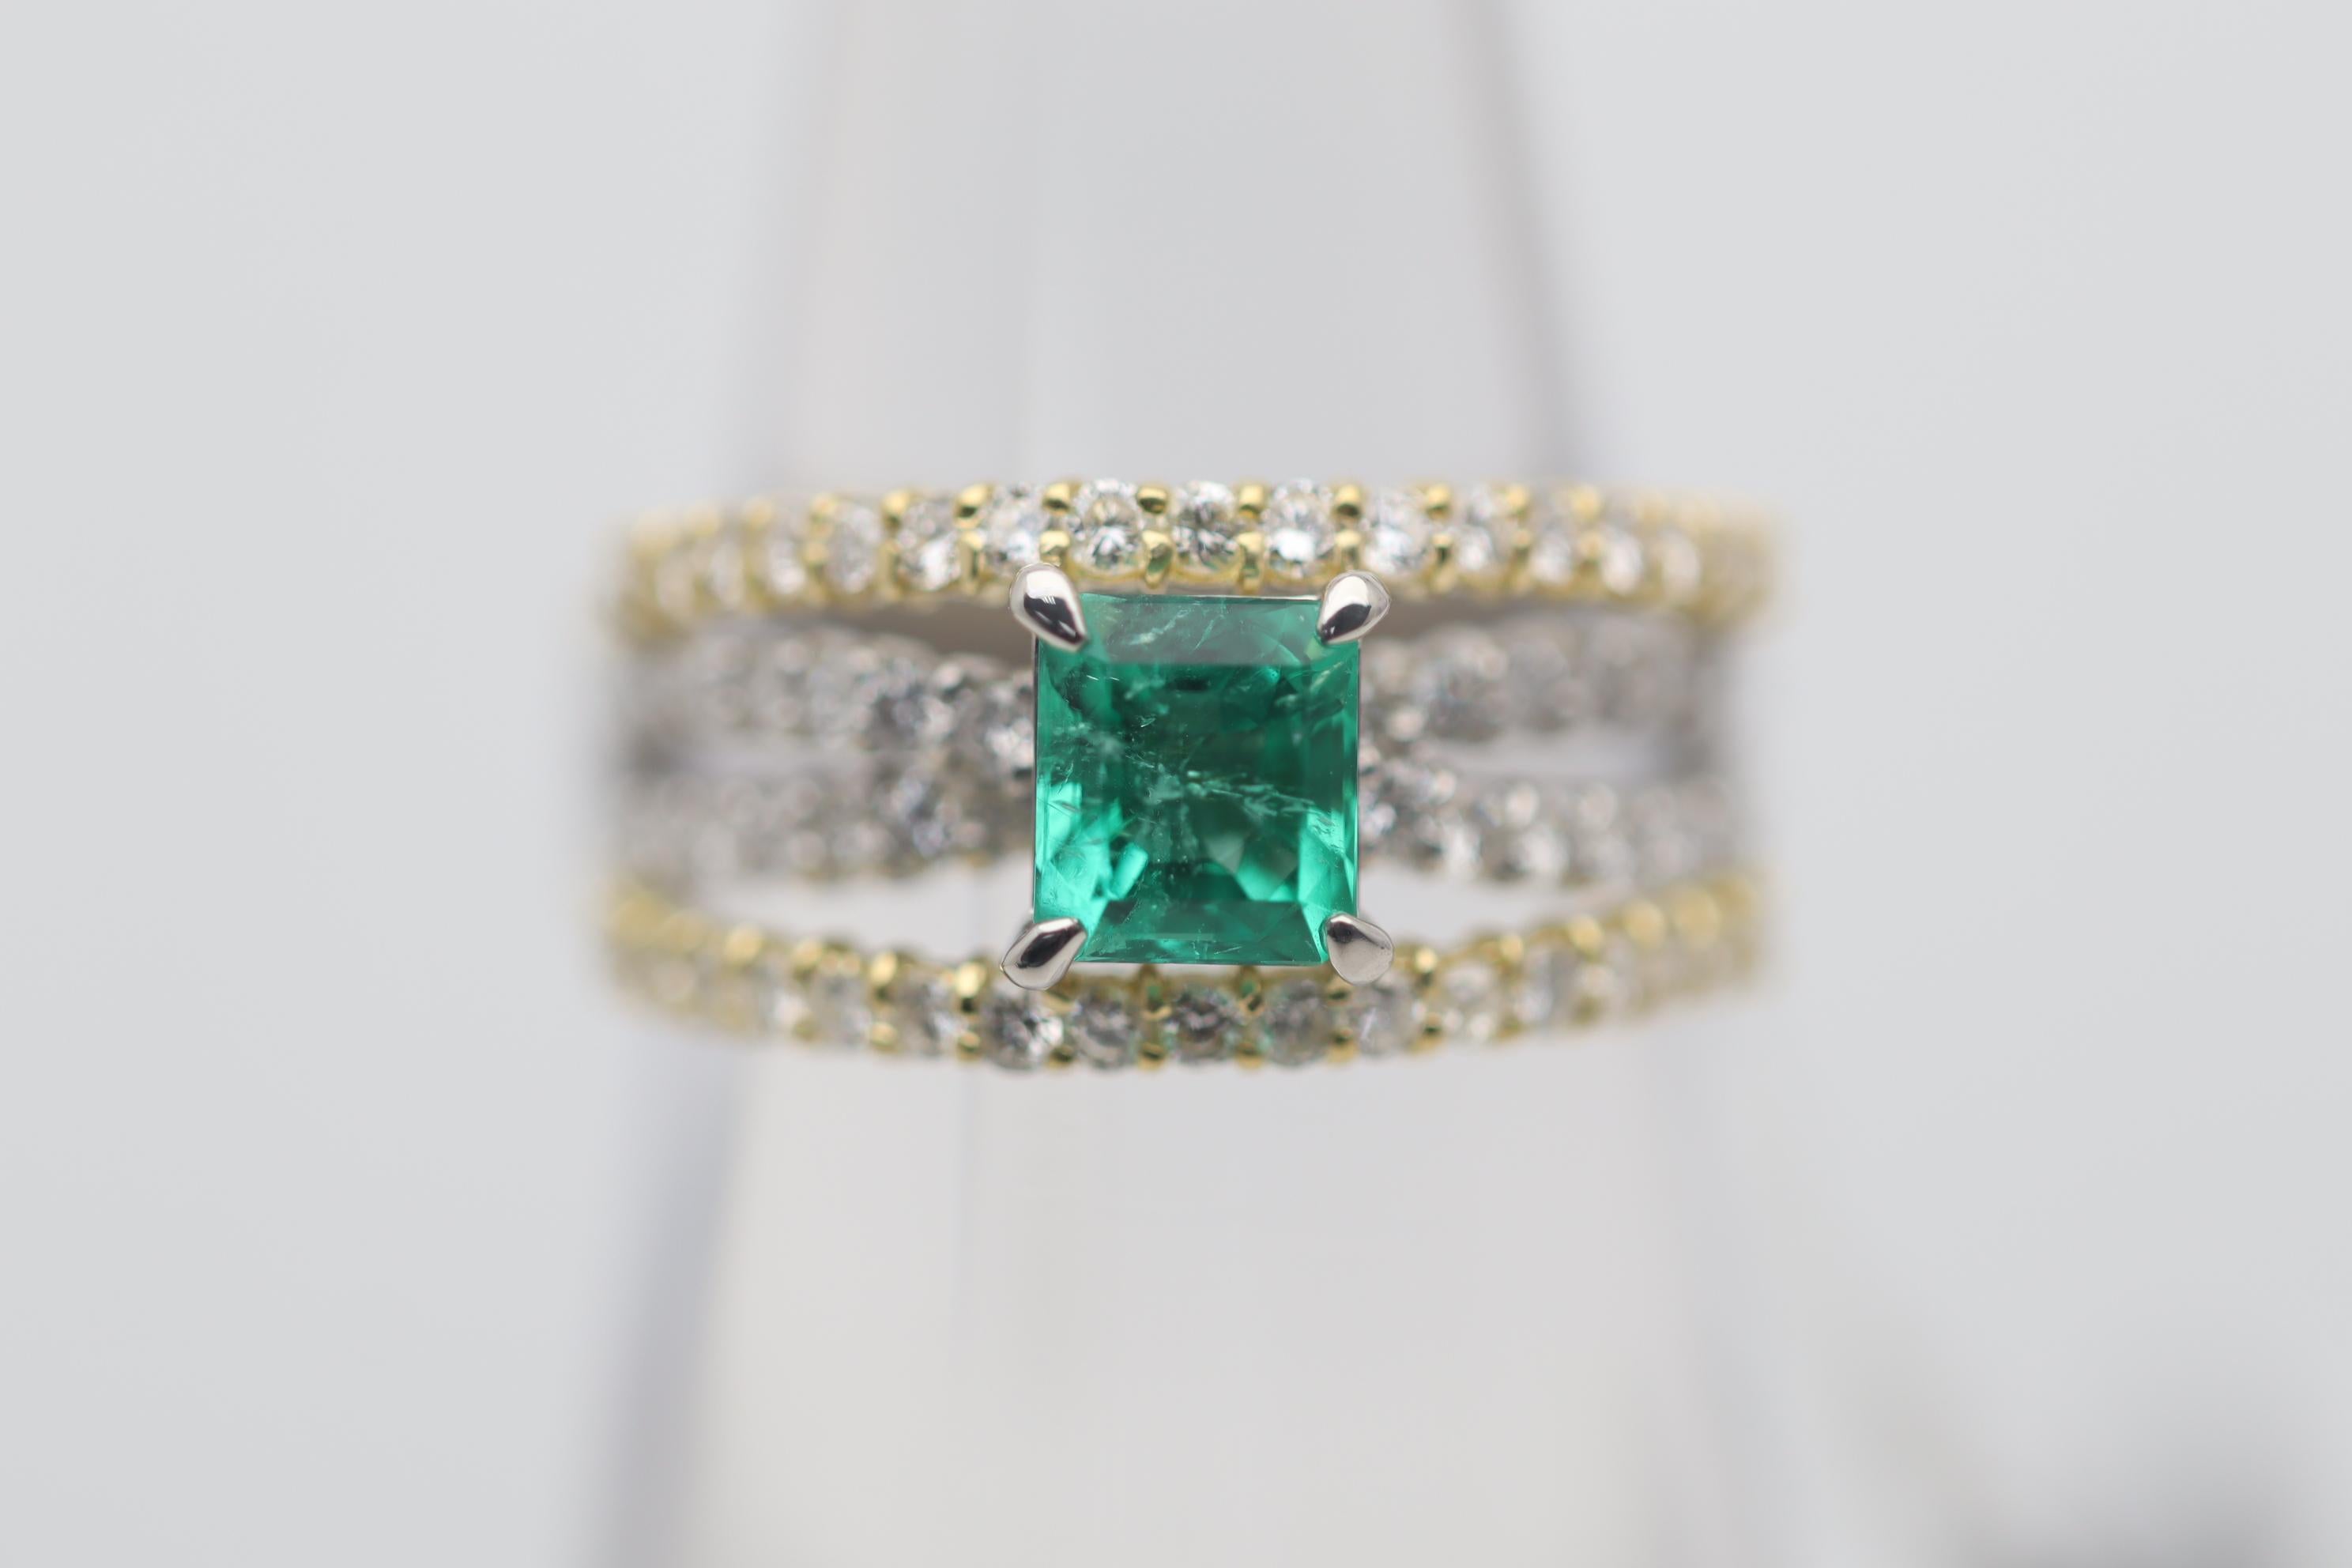 Cette bague élégante et raffinée est ornée d'une émeraude de qualité gemme pesant 0,77 carats. Sa couleur vert gazon, riche et brillante, fait de l'émeraude la pierre précieuse la plus colorée en vert. Il est complété par 0,78 carats de diamants